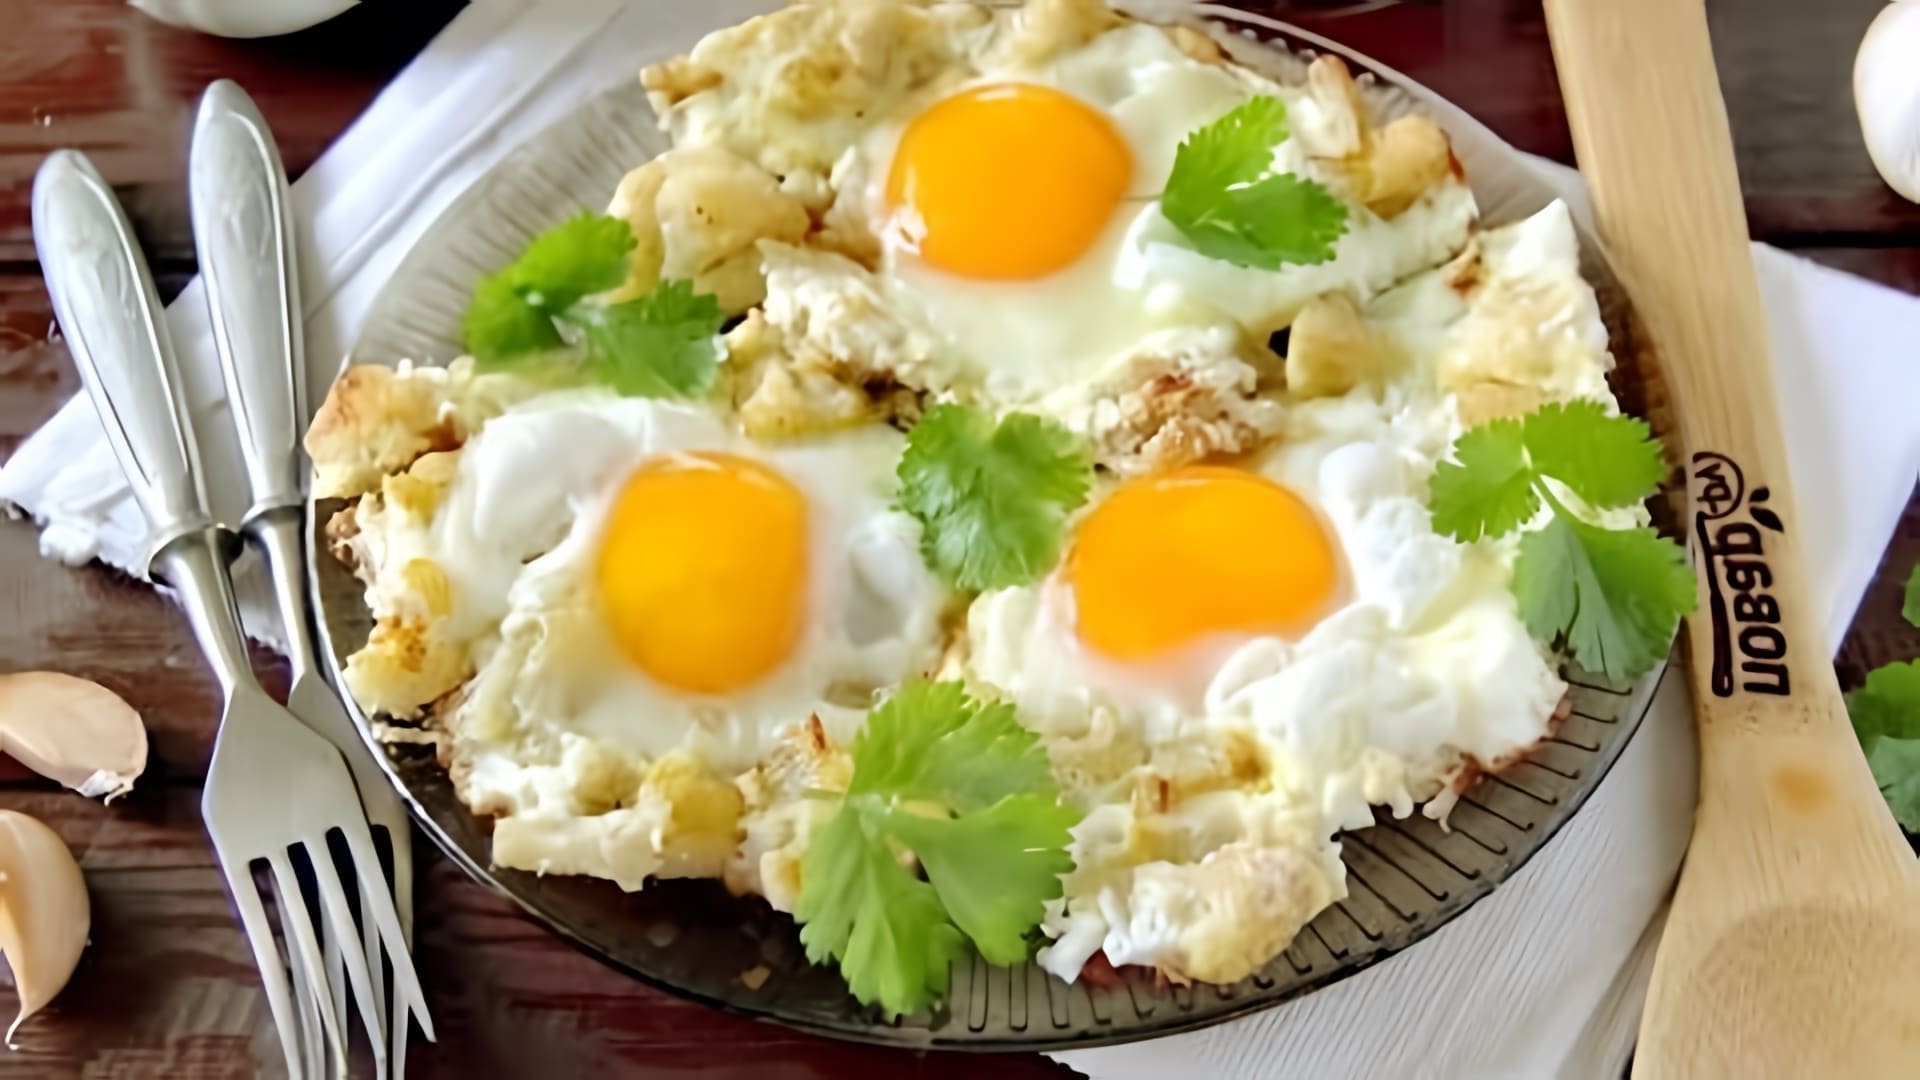 В этом видео демонстрируется рецепт приготовления яичницы с цветной капустой